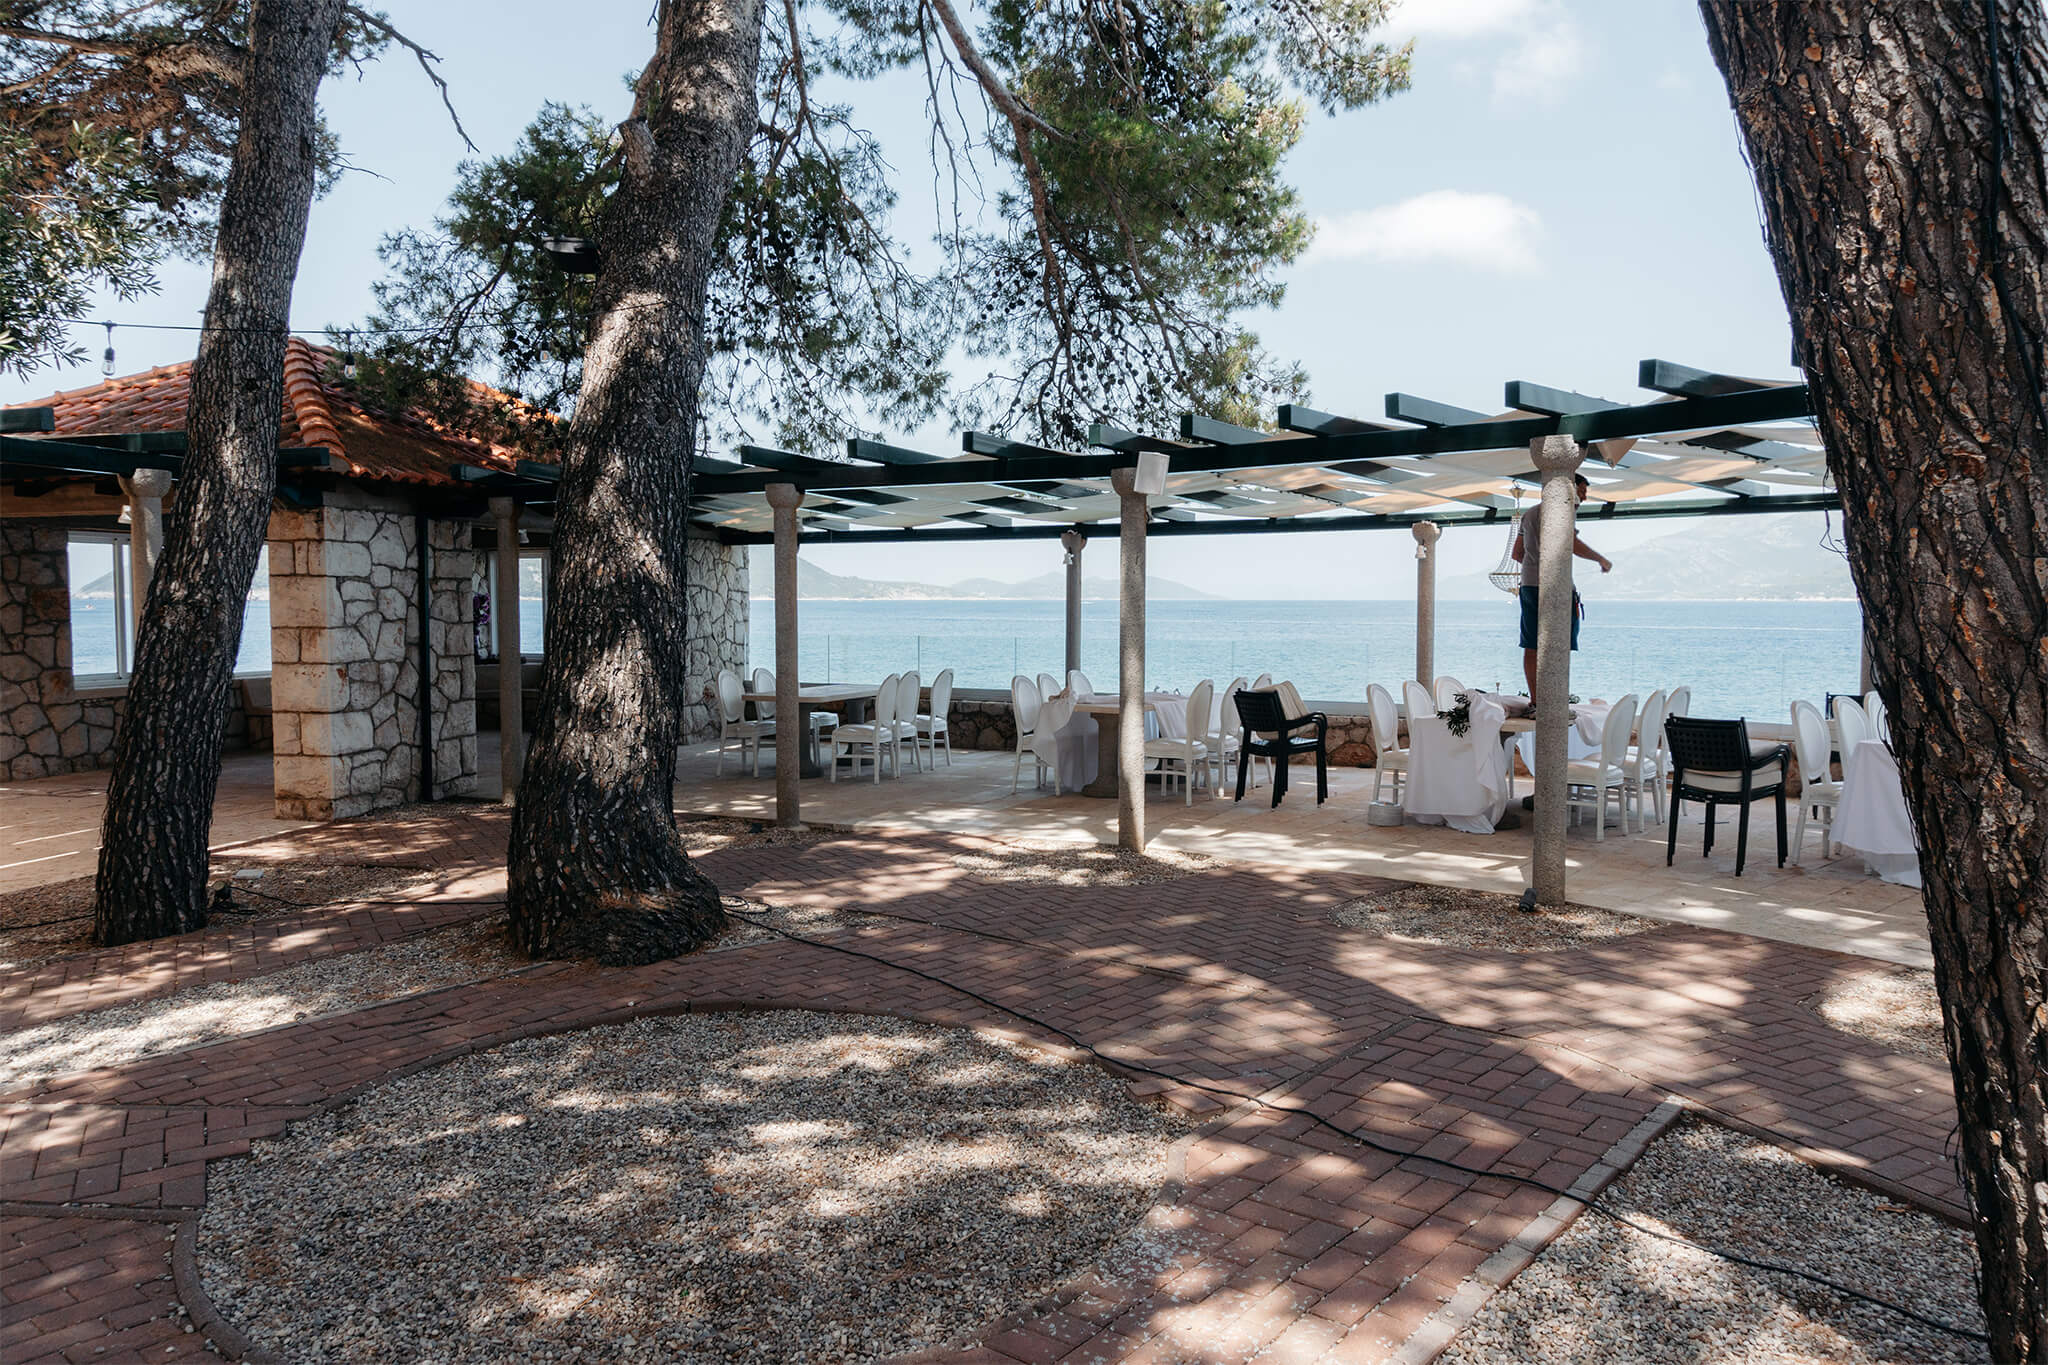 Heiraten in Kroatien am Strand auf einer Insel in Dalmatien